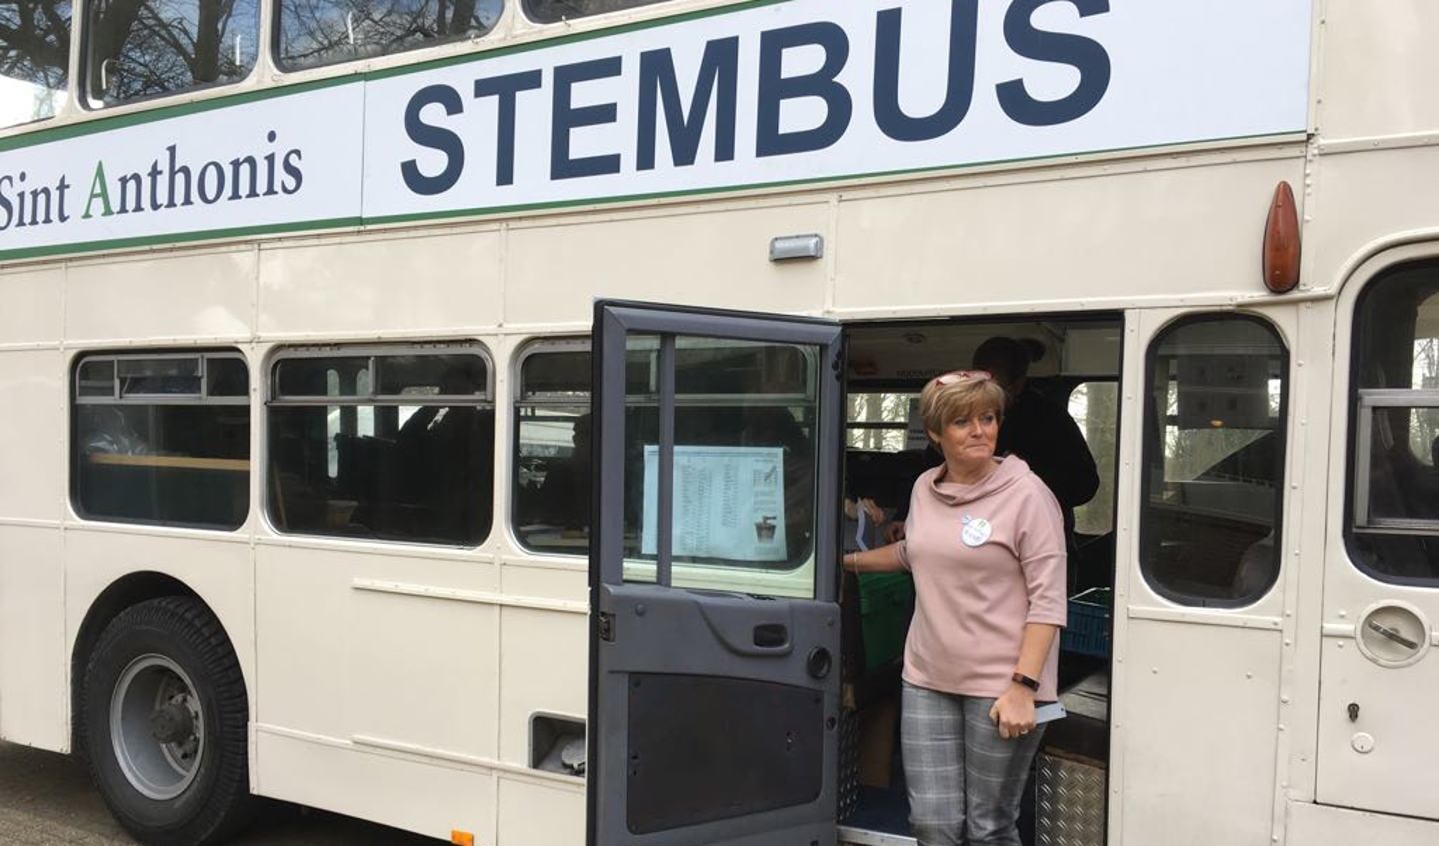 Burgemeester Sijbers van Sint Anthonis stemde in de mobiele bus die Bronlaak aandeed.